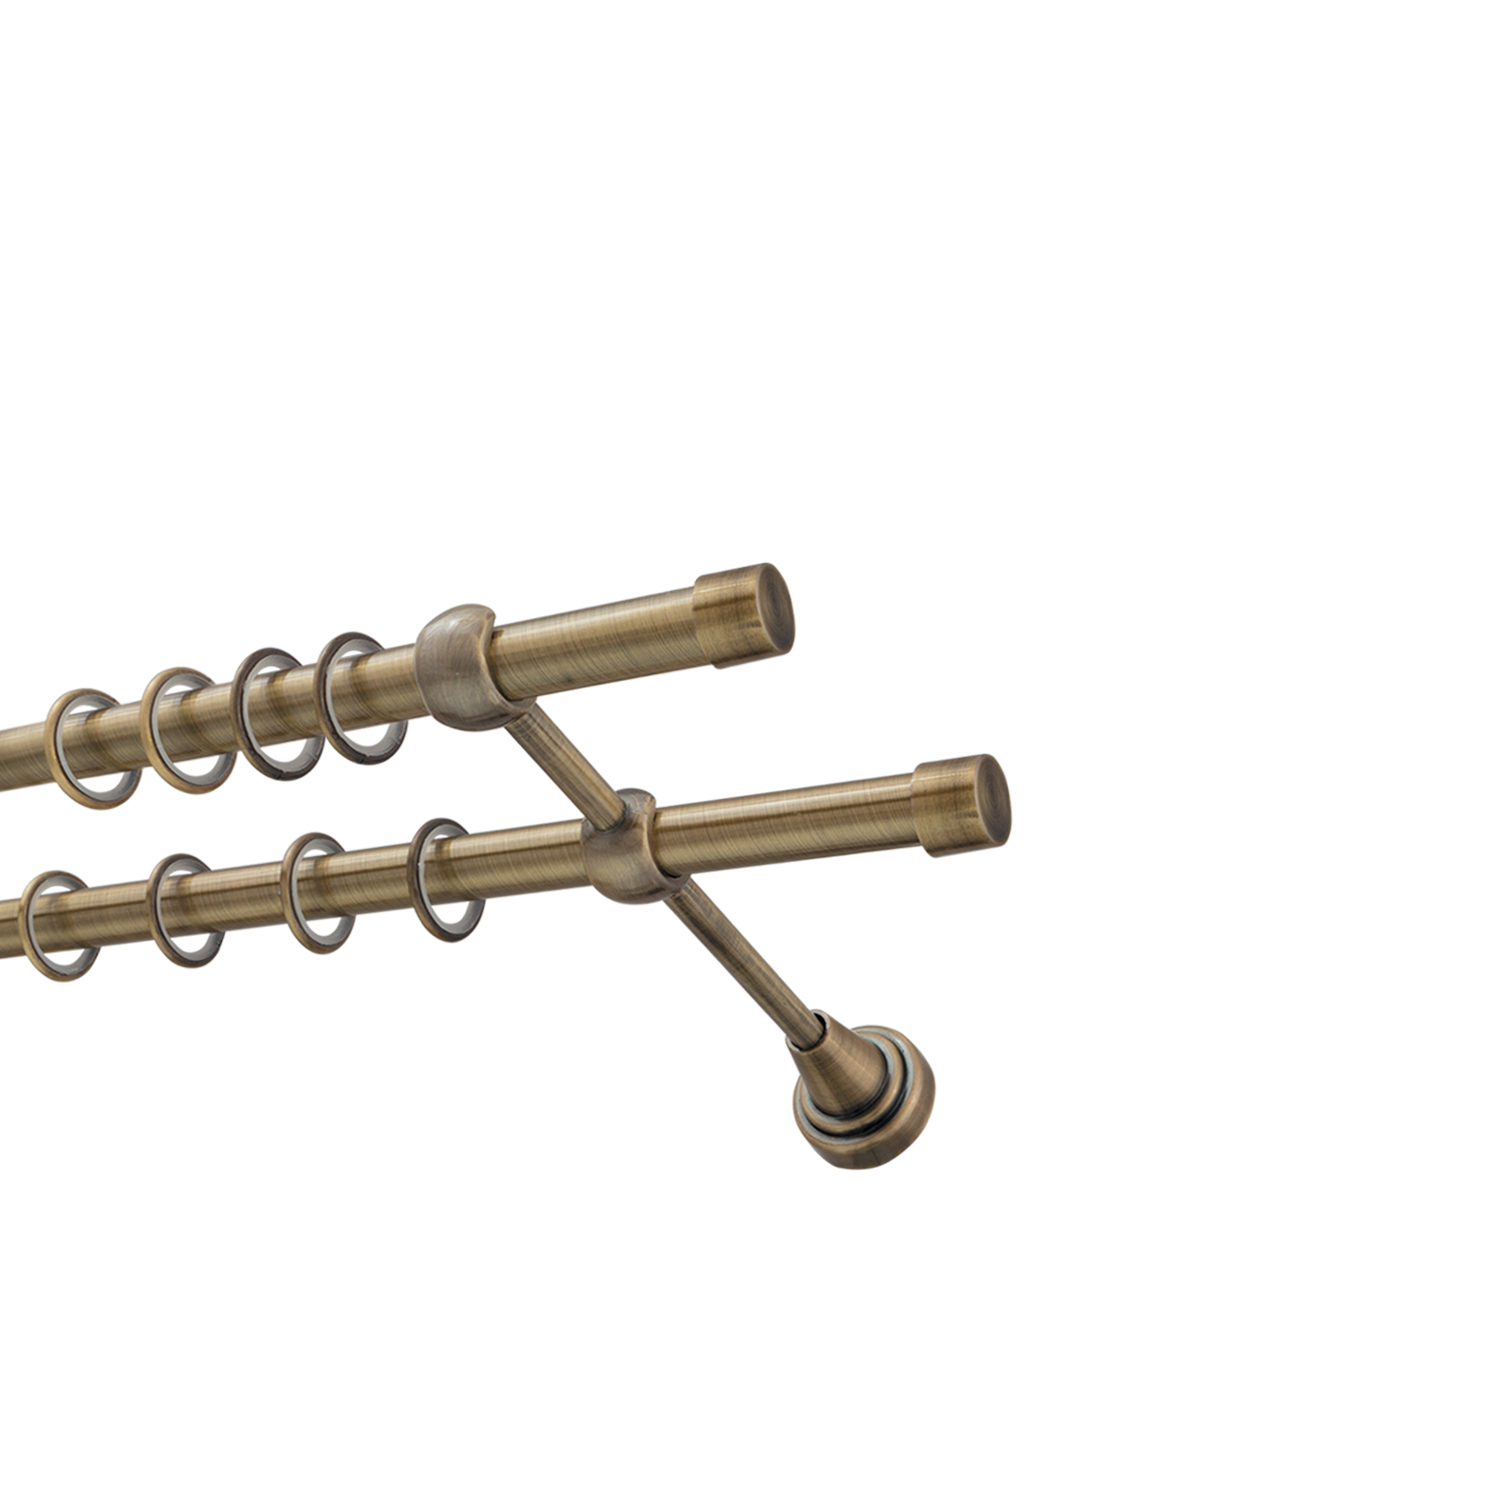 Металлический карниз для штор Заглушка, двухрядный 16/16 мм, бронза, гладкая штанга, длина 200 см - фото Wikidecor.ru